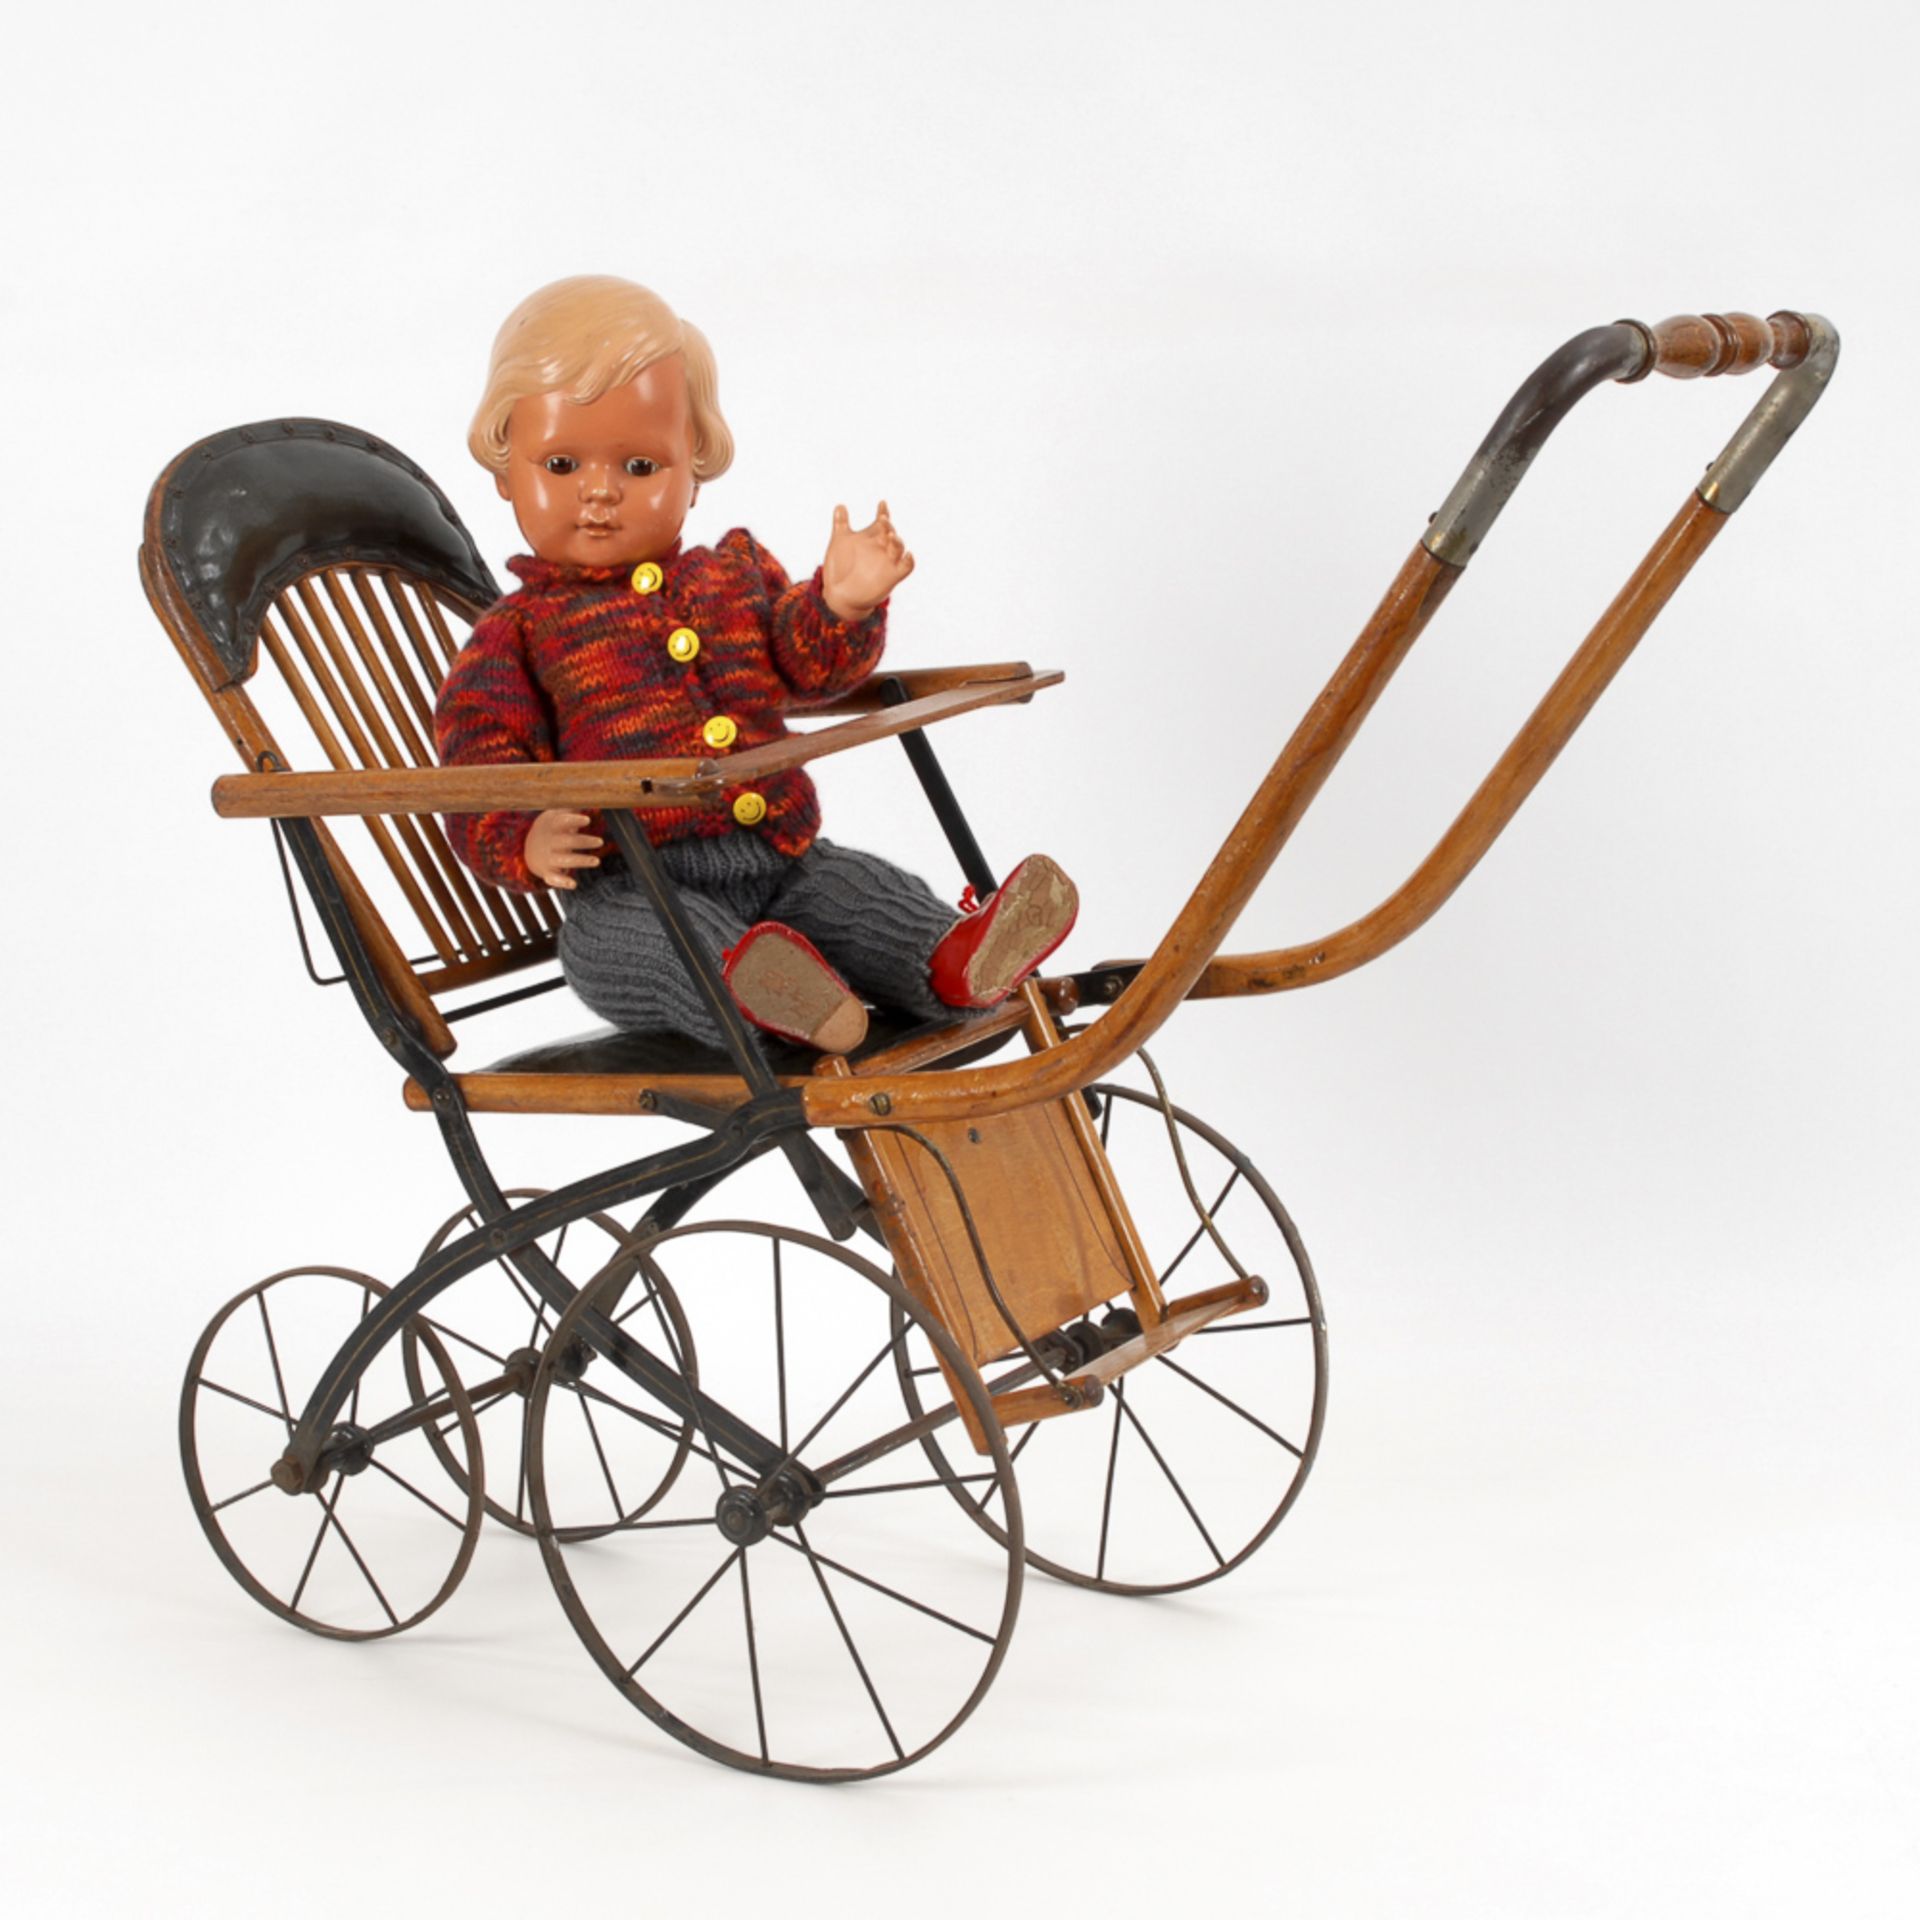 Puppenwagen mit Cellba-Puppe.1930er Jahre. Holz, Metall. H max. 63,5 cm, L der Puppe 50 cm. - Bild 2 aus 2